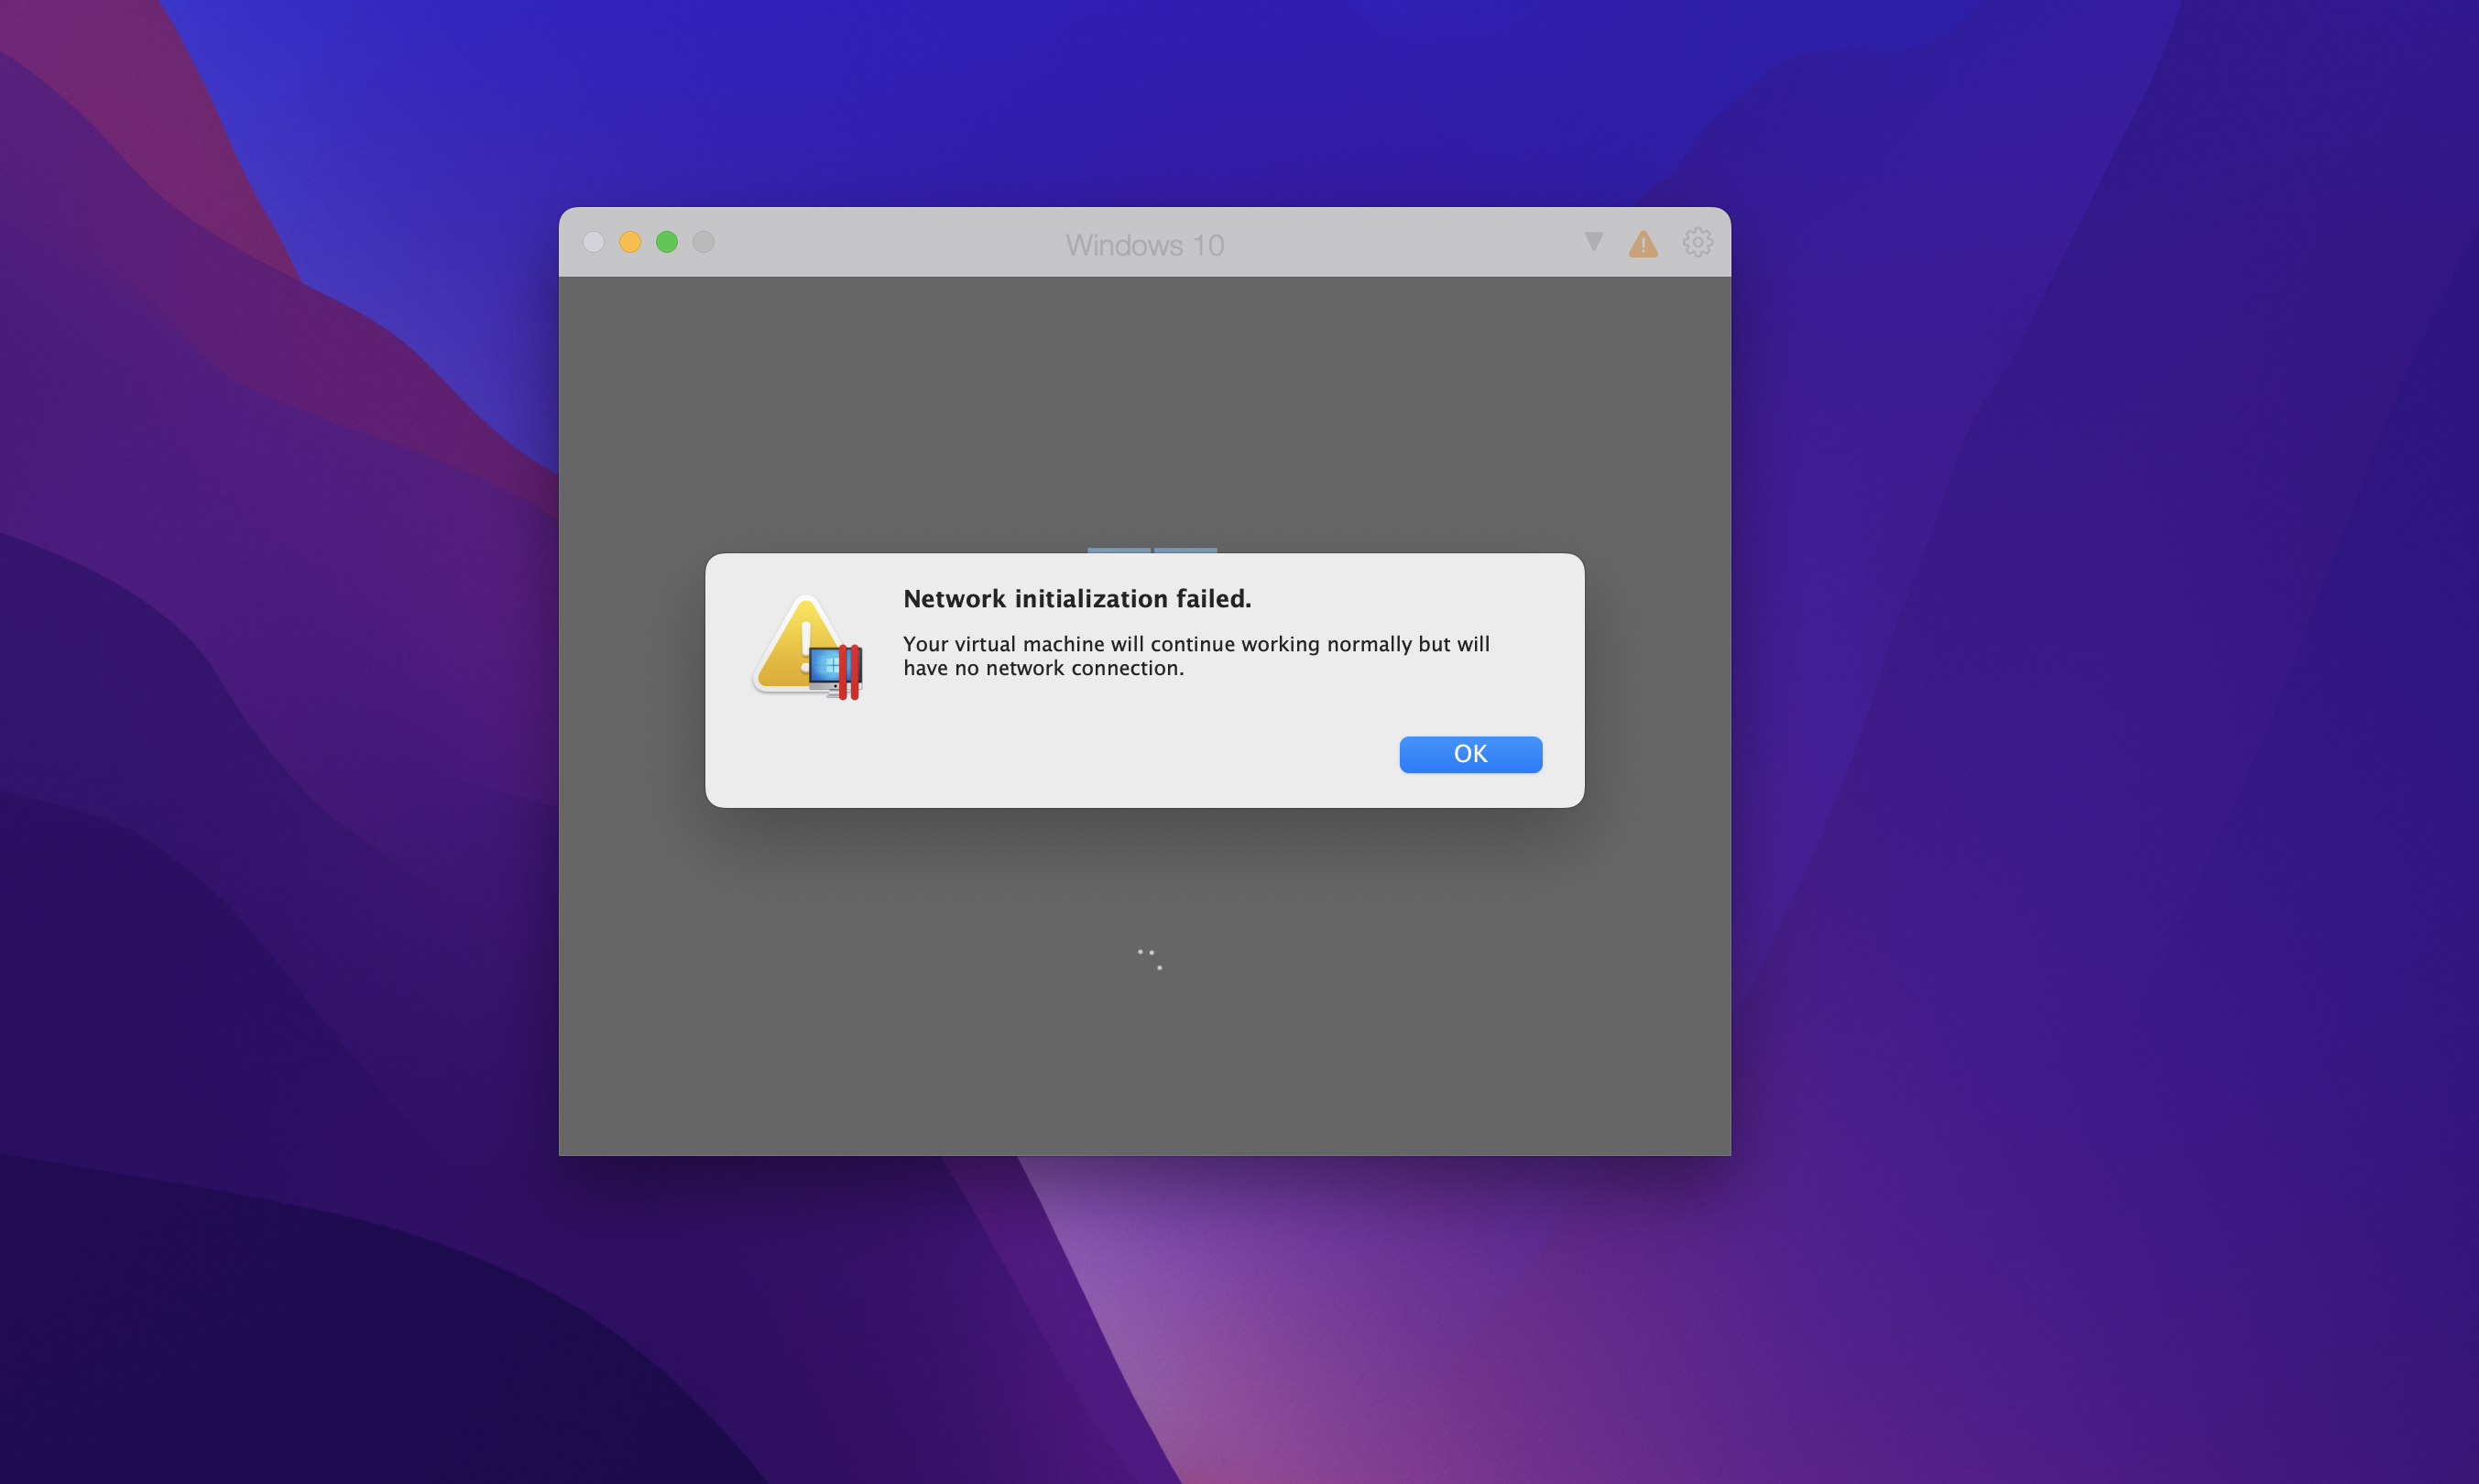 Tải Parallels Desktop for Mac bản 17 Full bản quyền – Hỗ trợ cài Windows trên Mac bản mới nhất 22